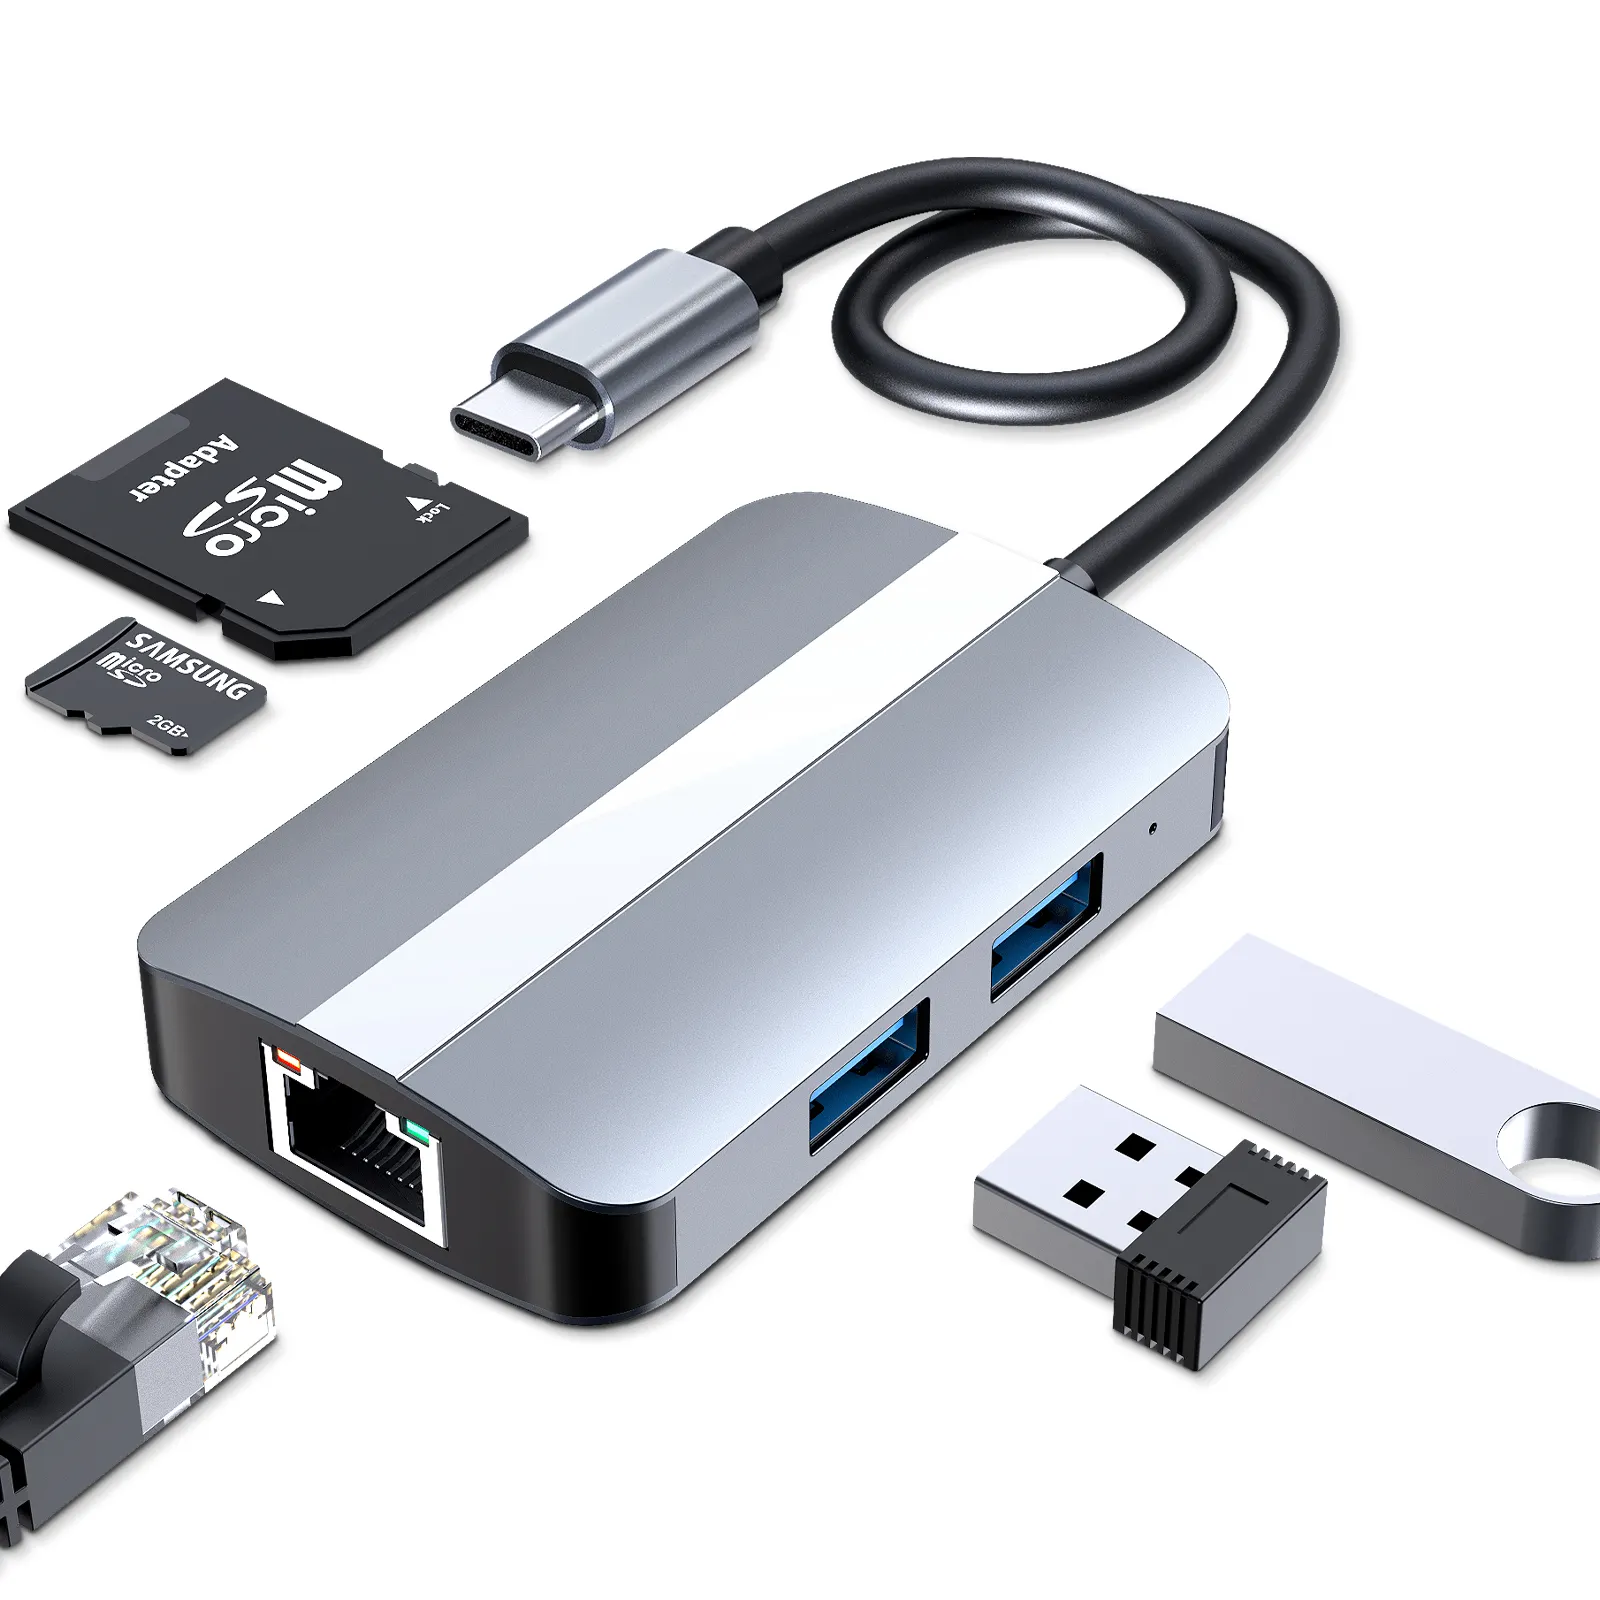 ยูนิเวอร์ซัล5พอร์ตตัวแยกฮับต่อพ่วง USB C ไปยังกิกะบิตอีเธอร์เน็ตทีเอฟเอสดีการ์ดเชื่อมต่อกับแล็ปท็อป